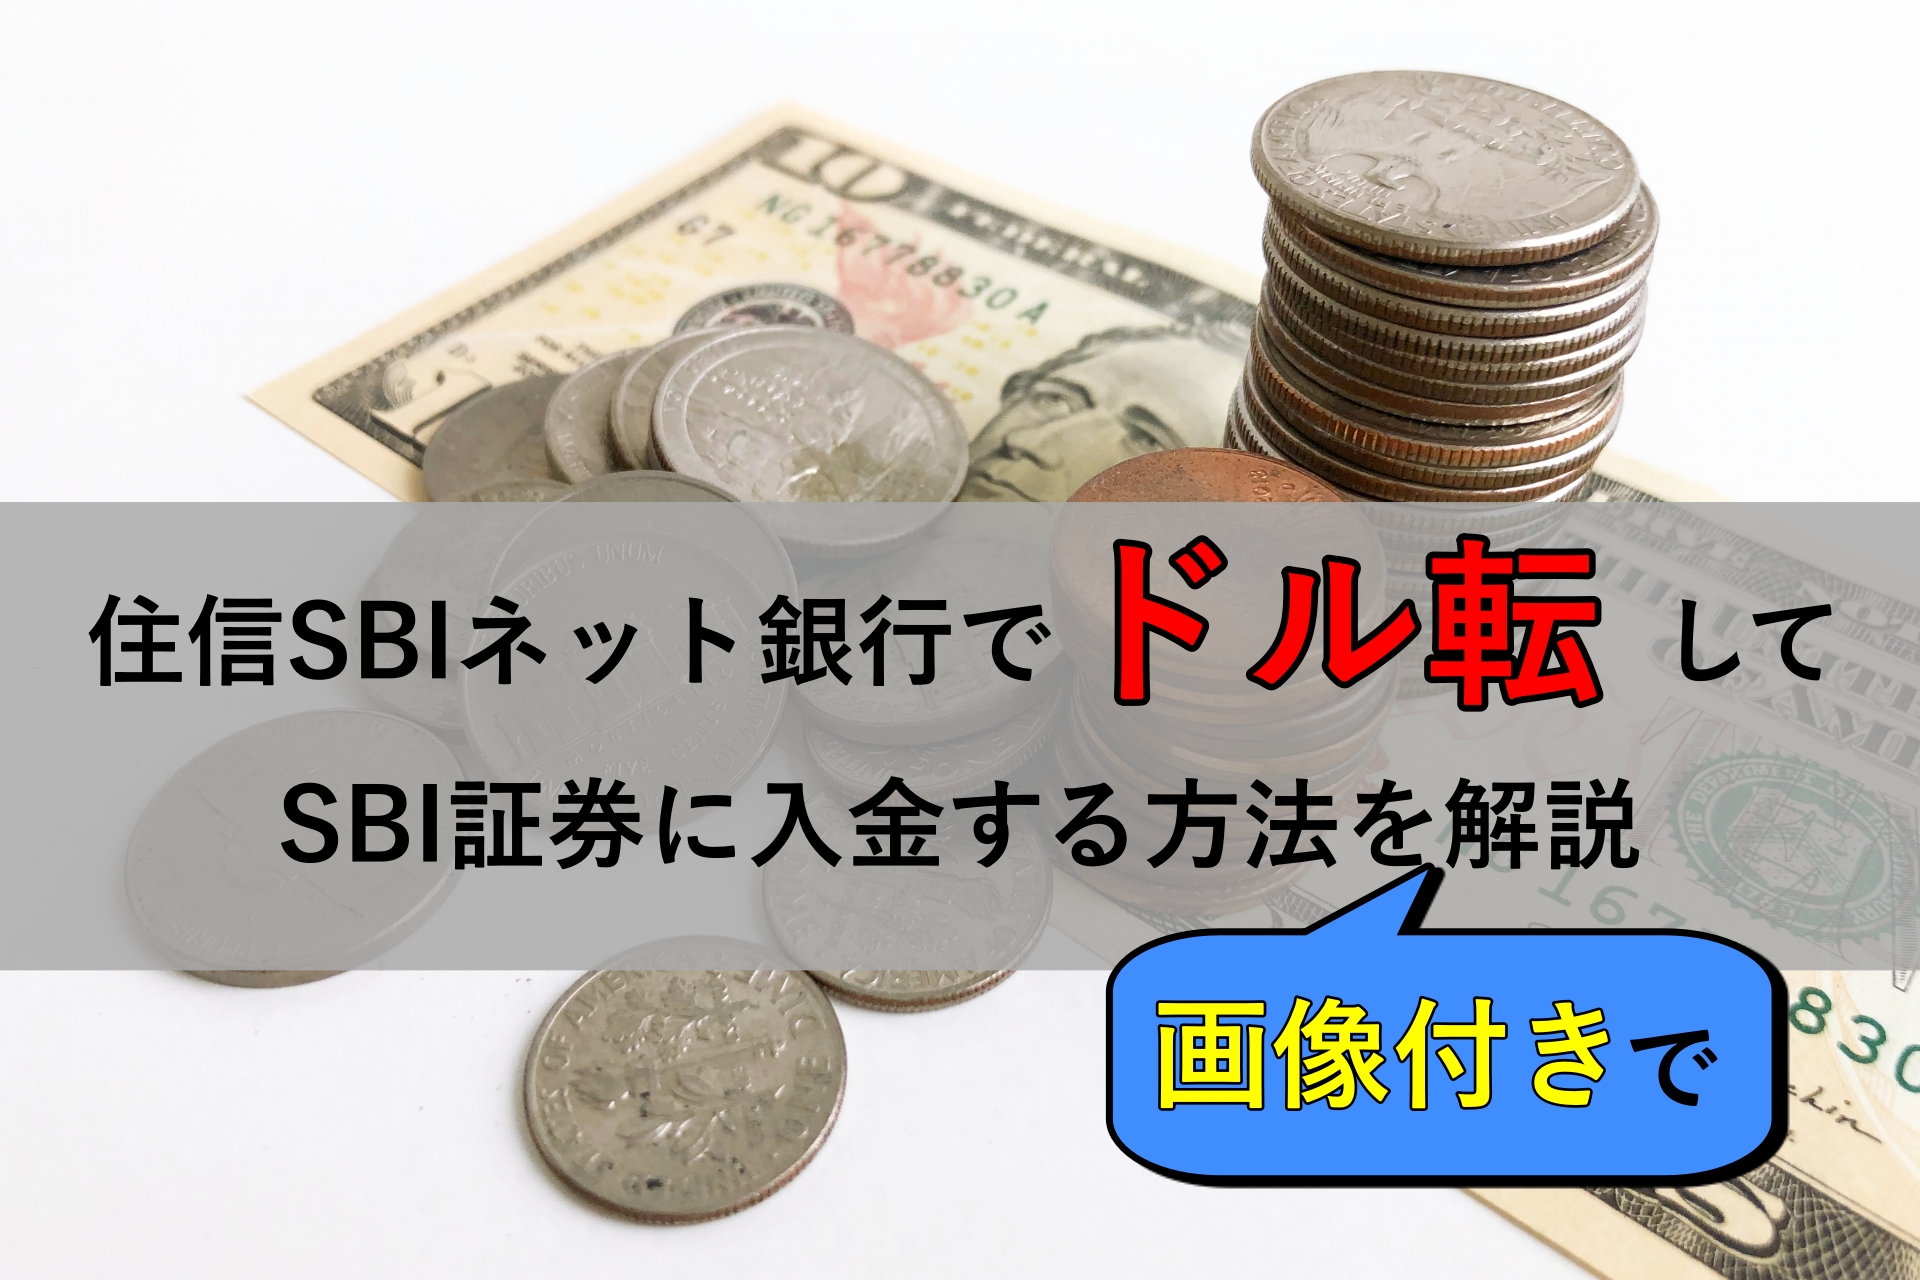 画像解説 住信sbiネット銀行でドル転 Sbi証券に入金する方法 おっちょfxブログ